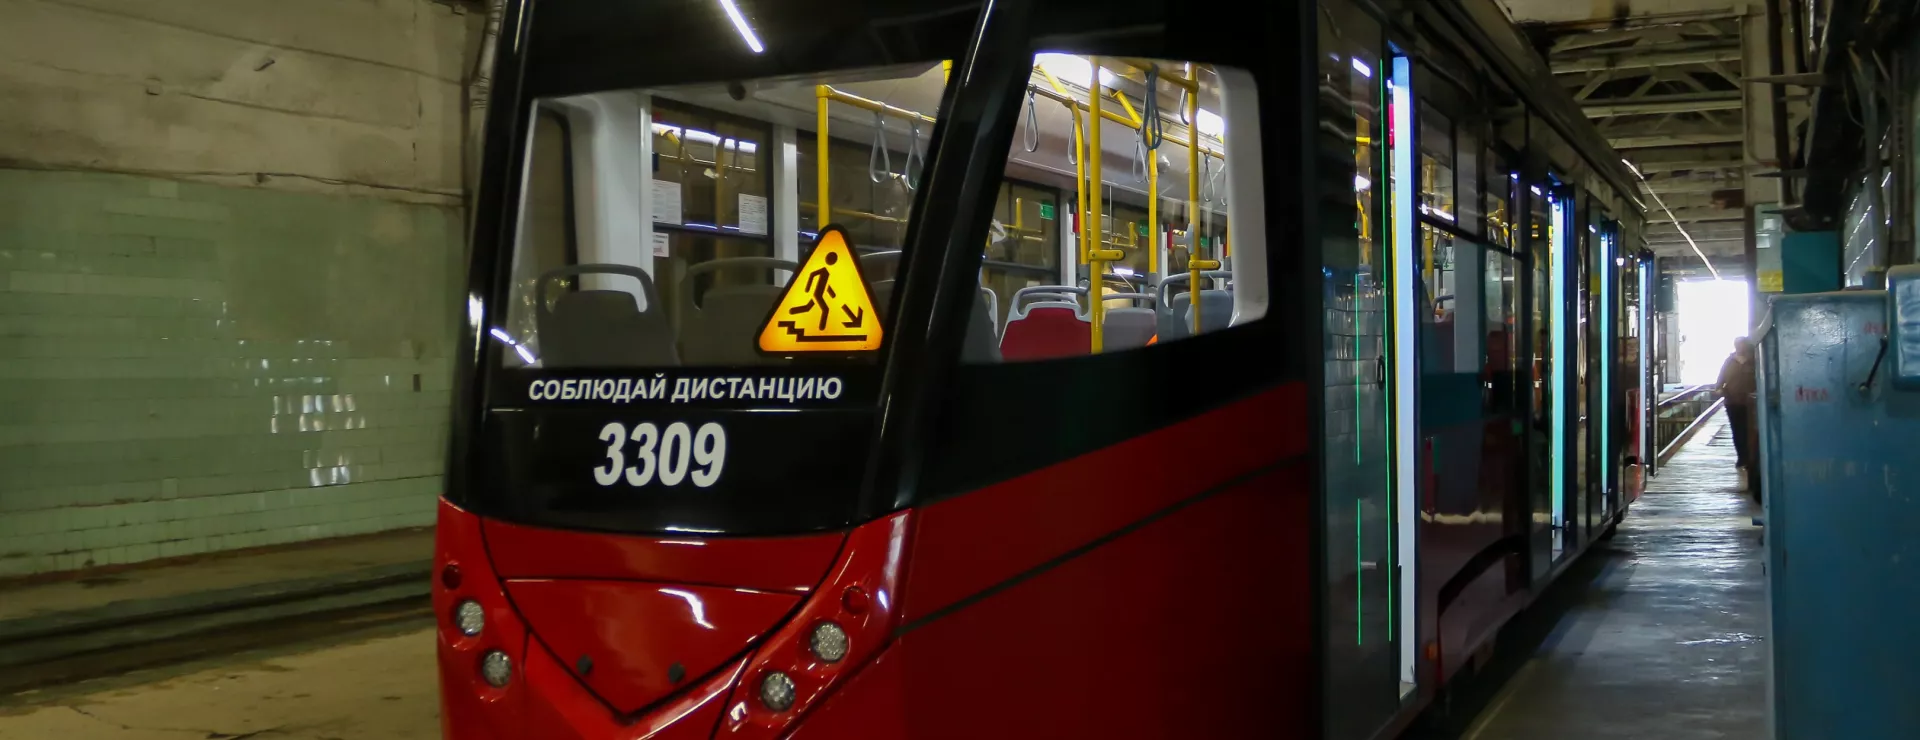 Вошли в режим: сколько новых трамваев вышли на линию в Барнауле и почему проходят ТО